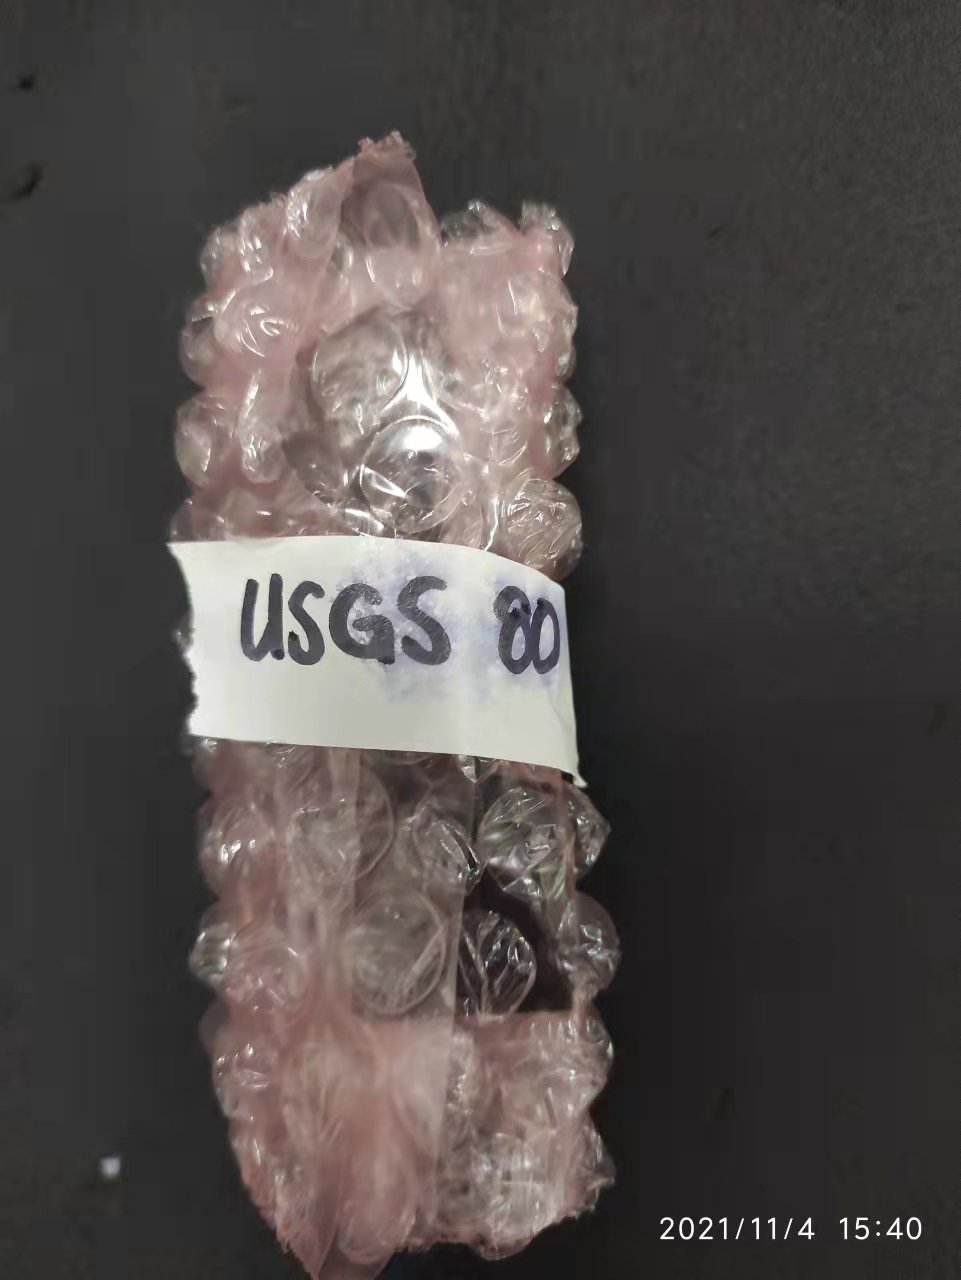 USGS80,silver phosphat,磷酸银